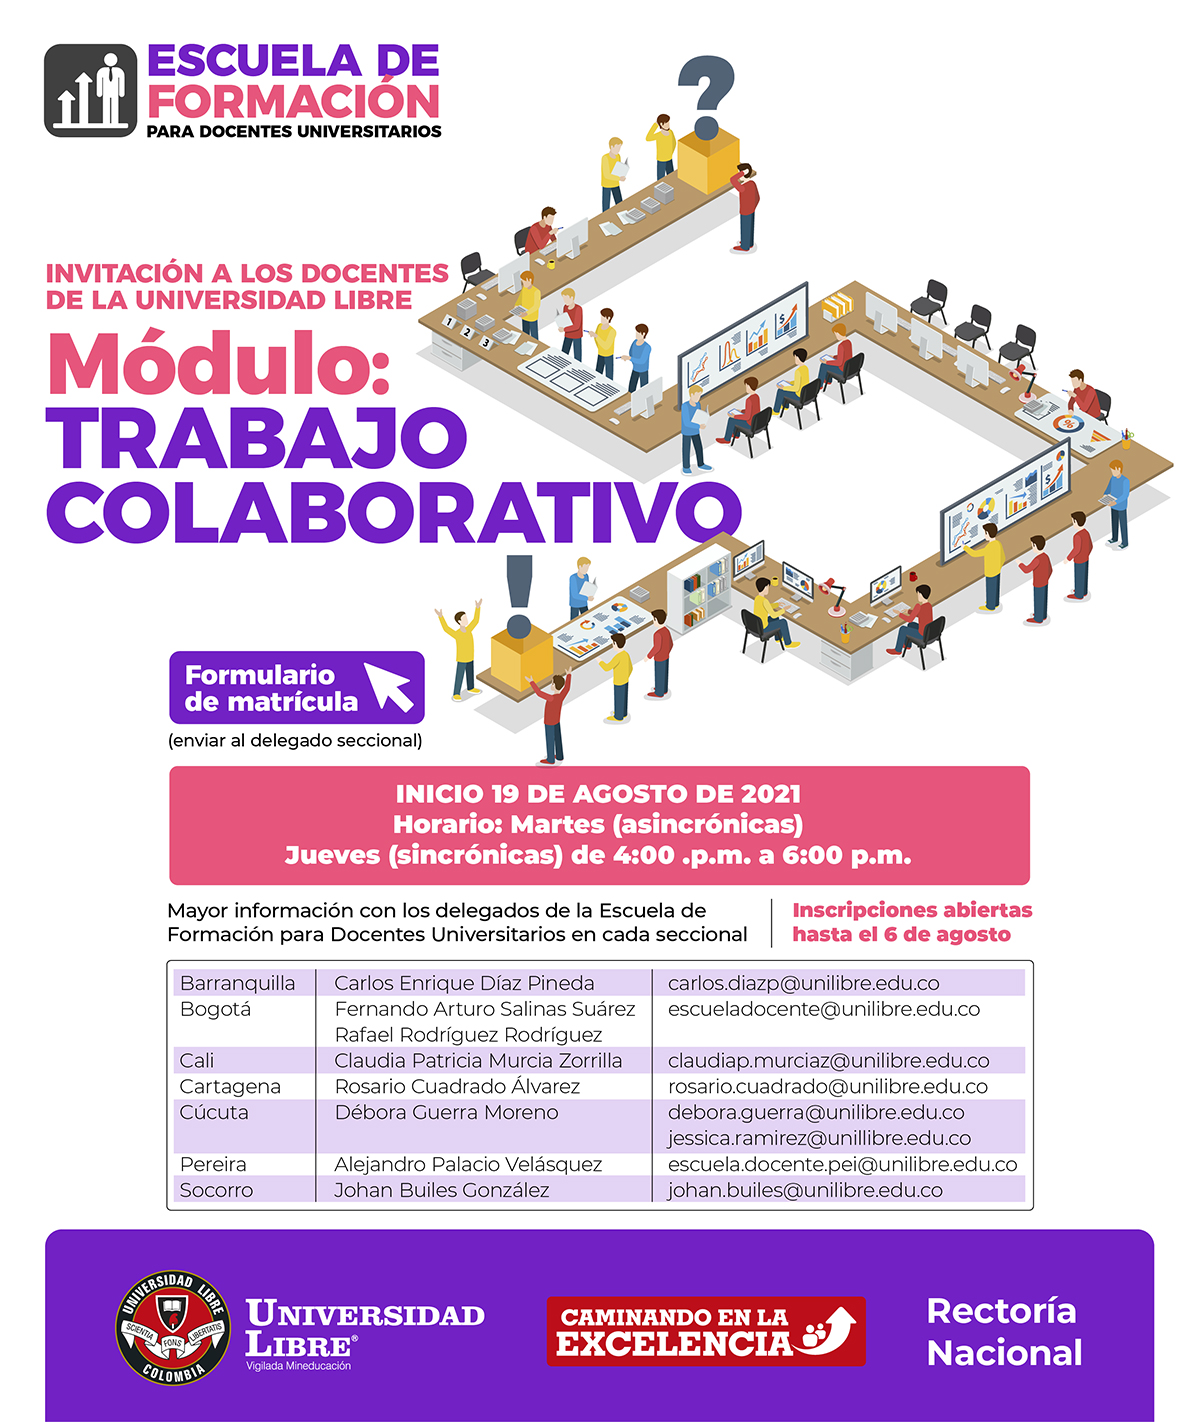 modulo-trabajo-colaborativo-2021-2